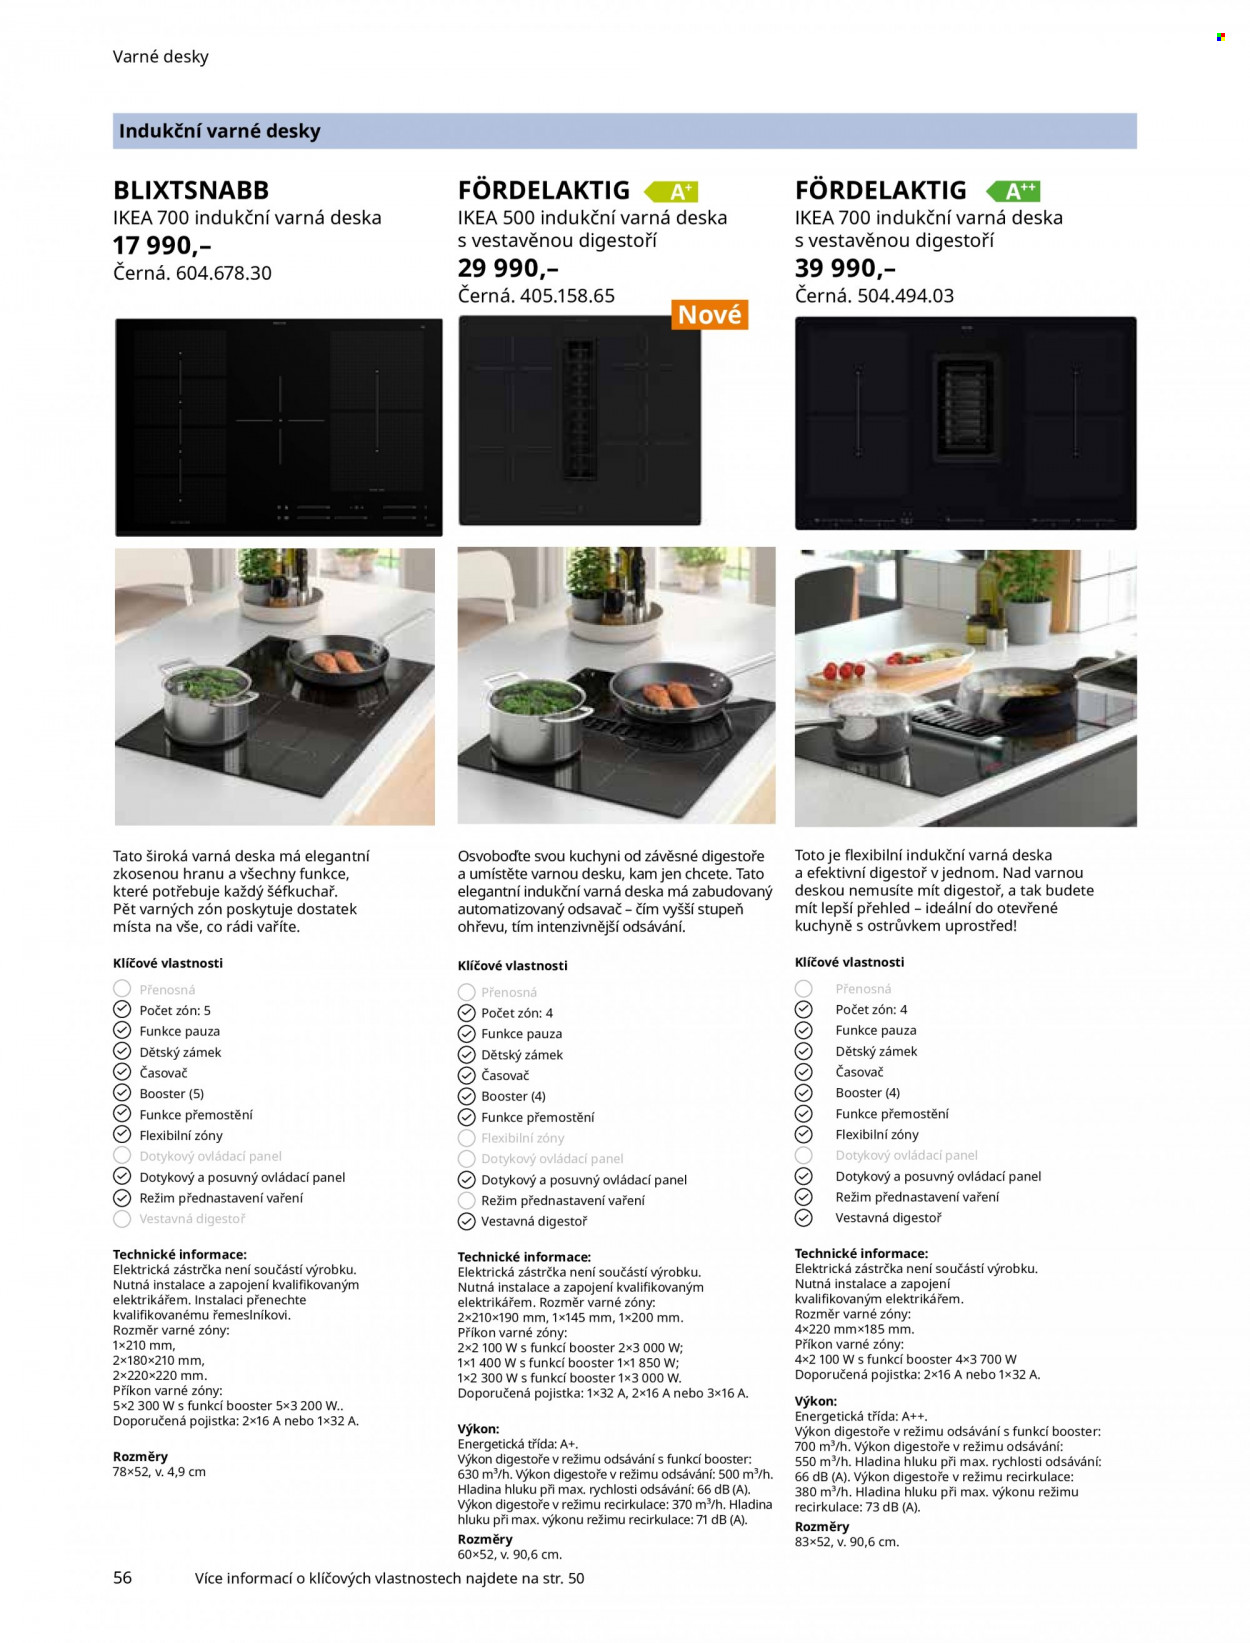 thumbnail - Leták IKEA - Produkty v akci - digestoř, indukční varná deska, varná deska. Strana 56.